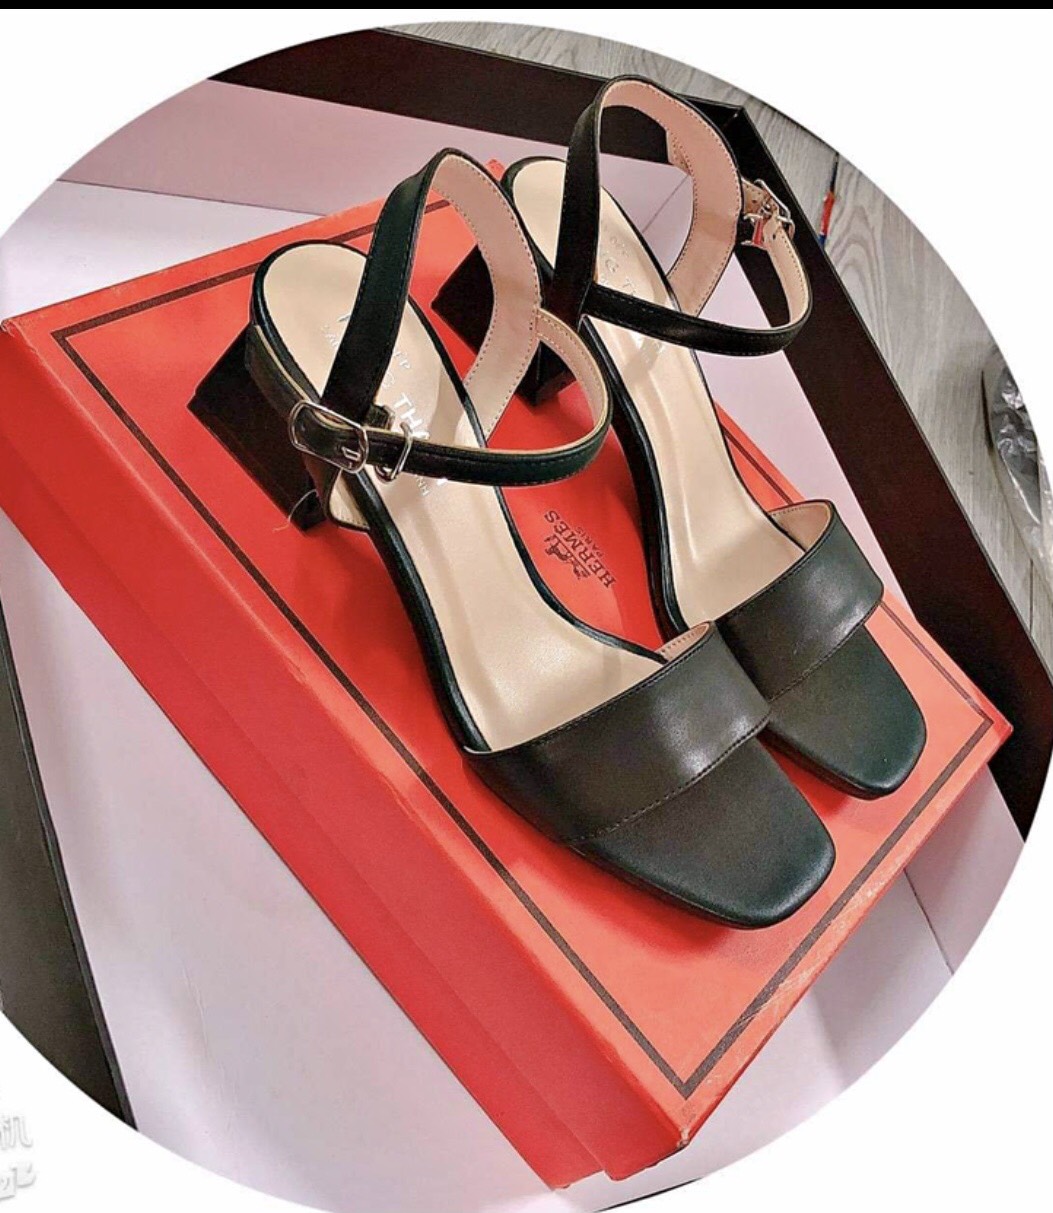 Sandal cao gót quai đá gót ngọc 3p thời trang dành chp phái đẹp M01 thumbnail